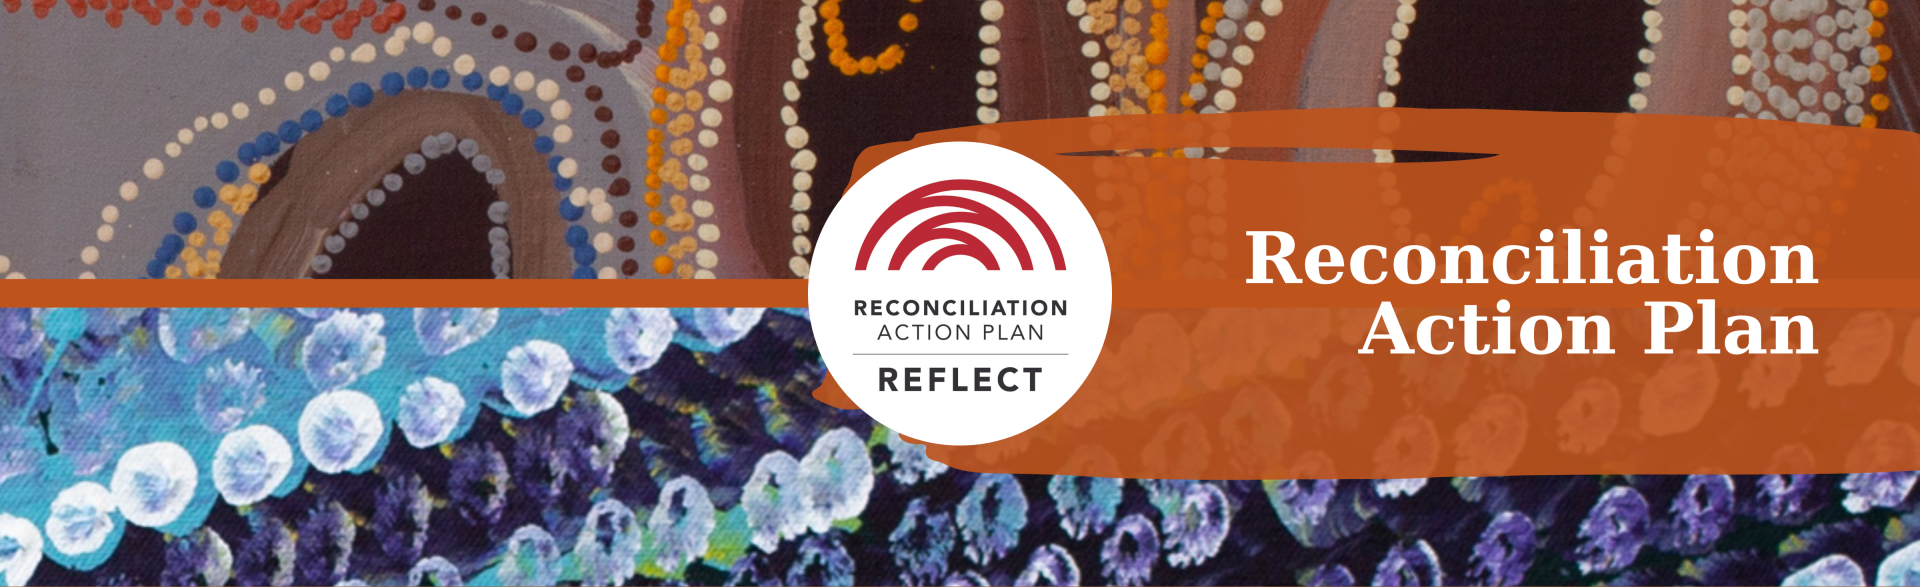 Picture: Reconciliation Action Plan